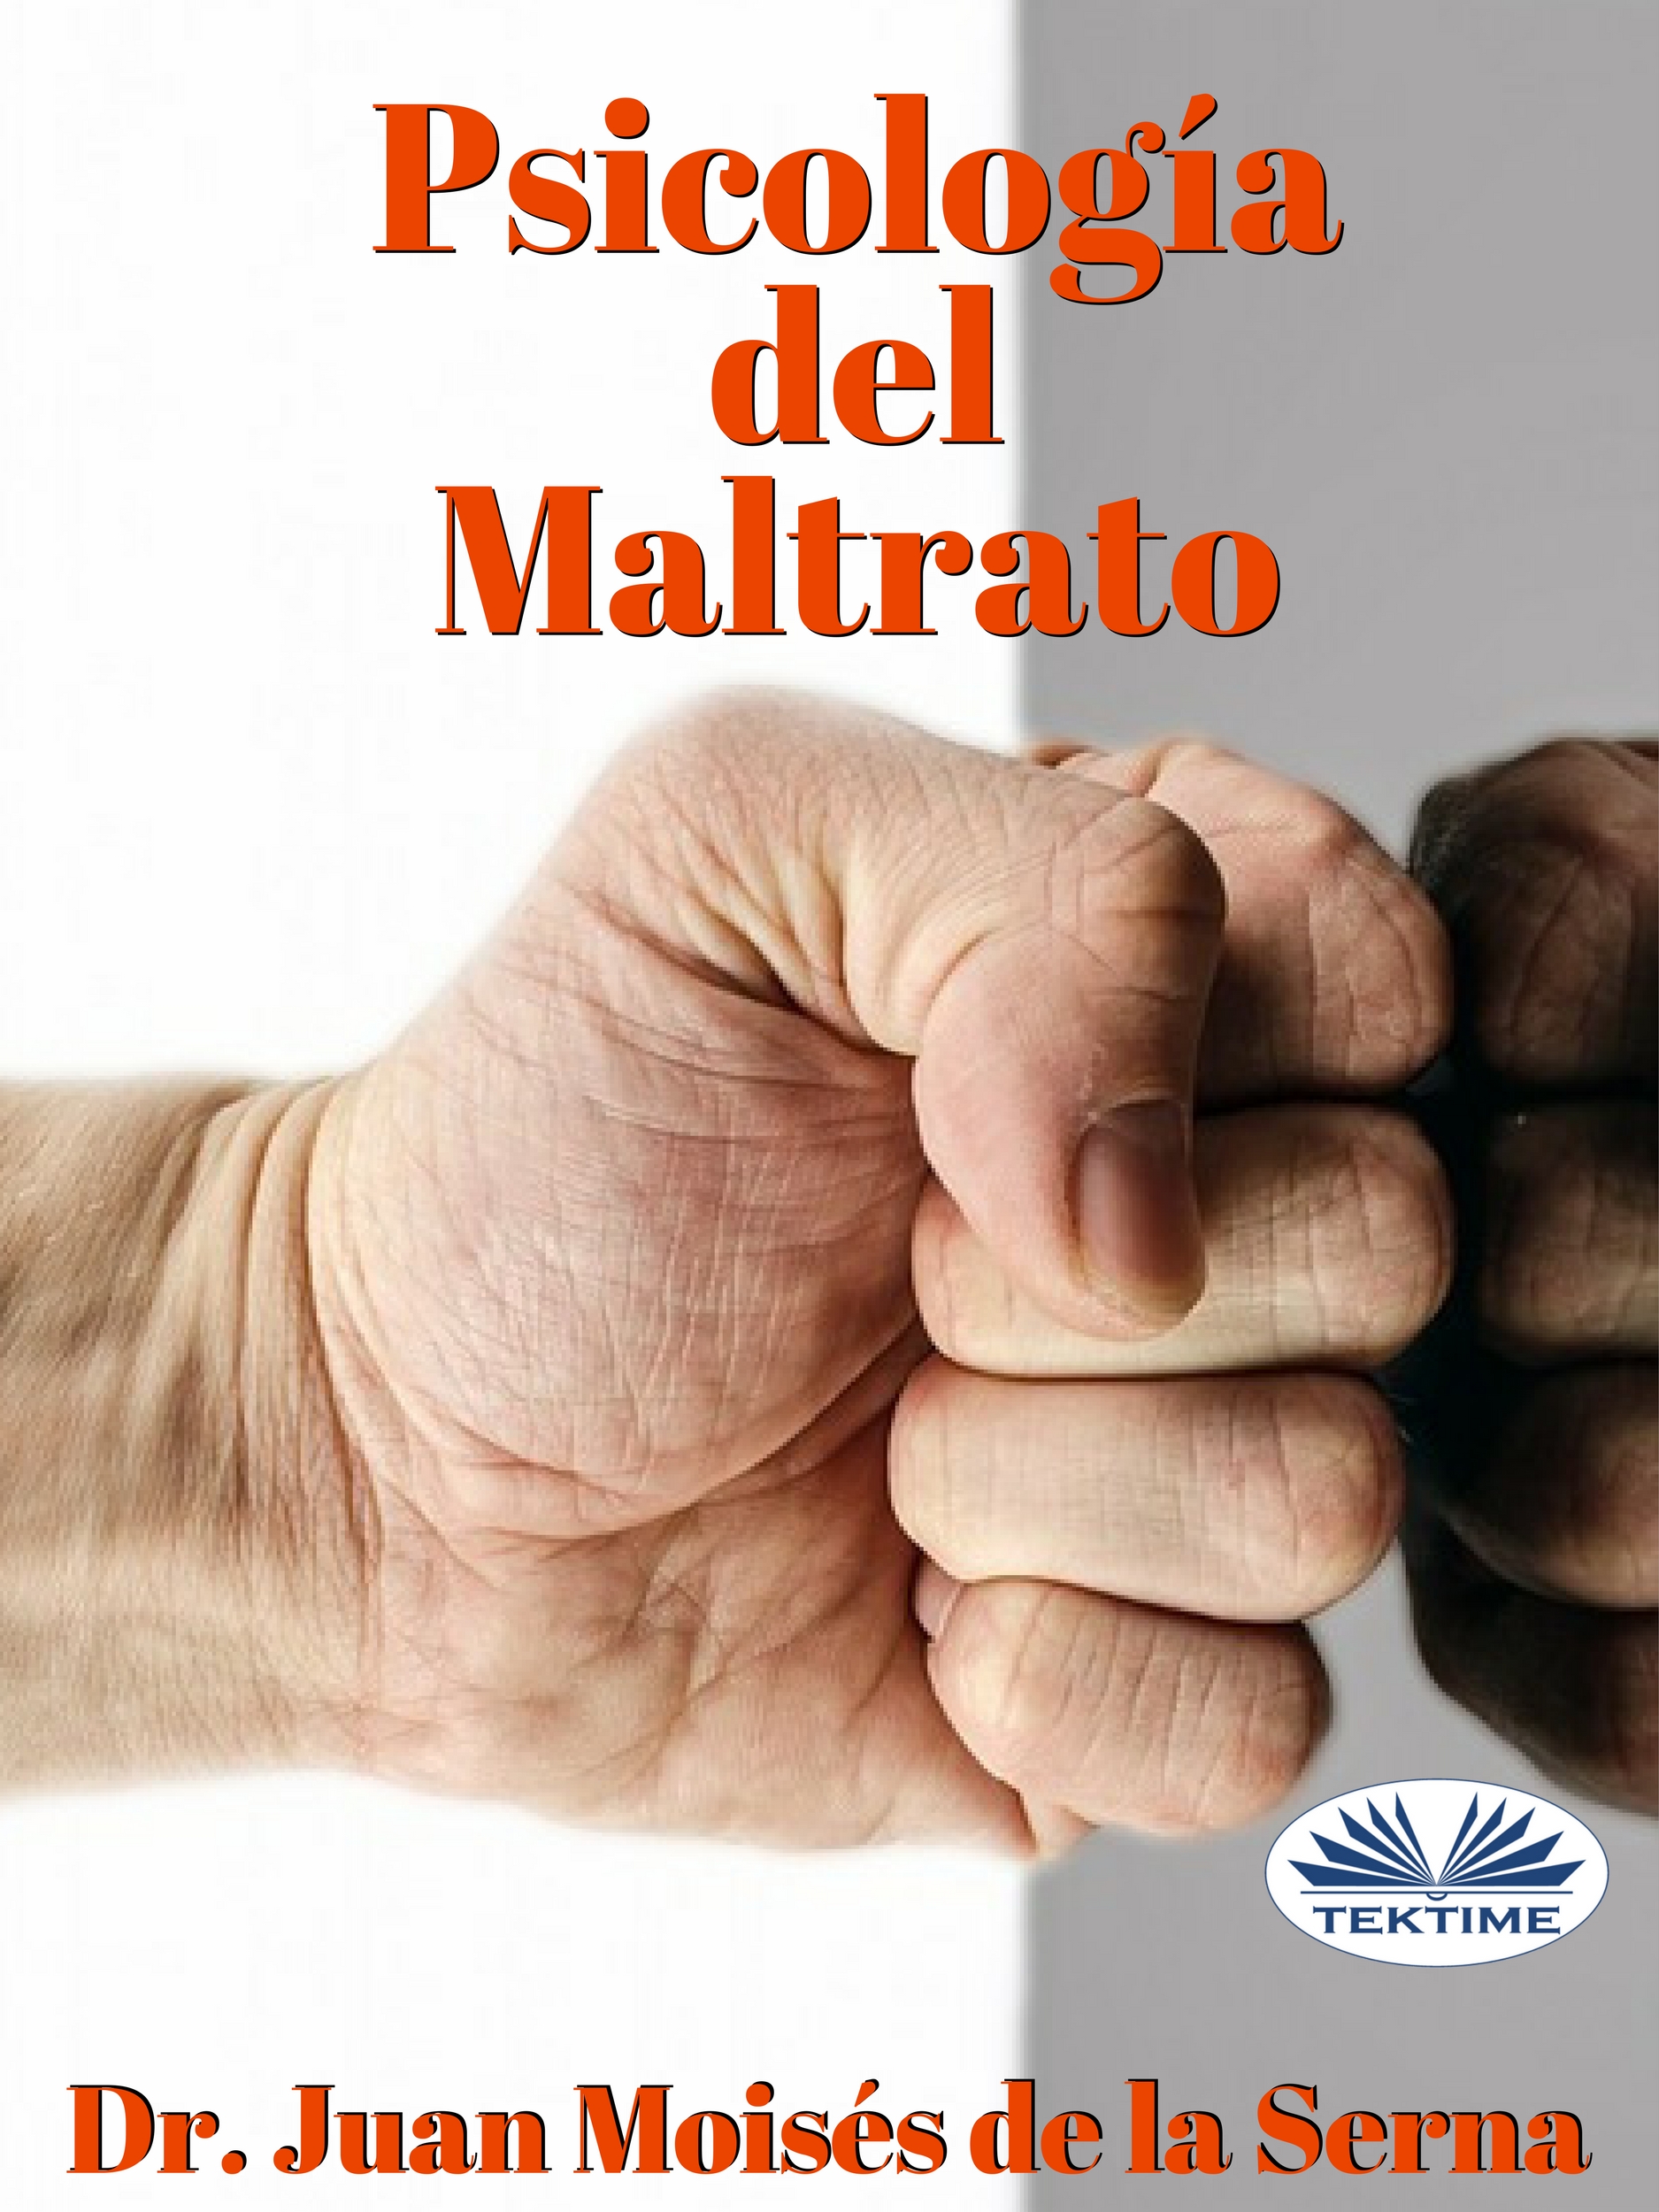 Книга Psicología Del Maltrato из серии , созданная Juan Moisés De La Serna, может относится к жанру Секс и семейная психология. Стоимость электронной книги Psicología Del Maltrato с идентификатором 40850573 составляет 90.25 руб.